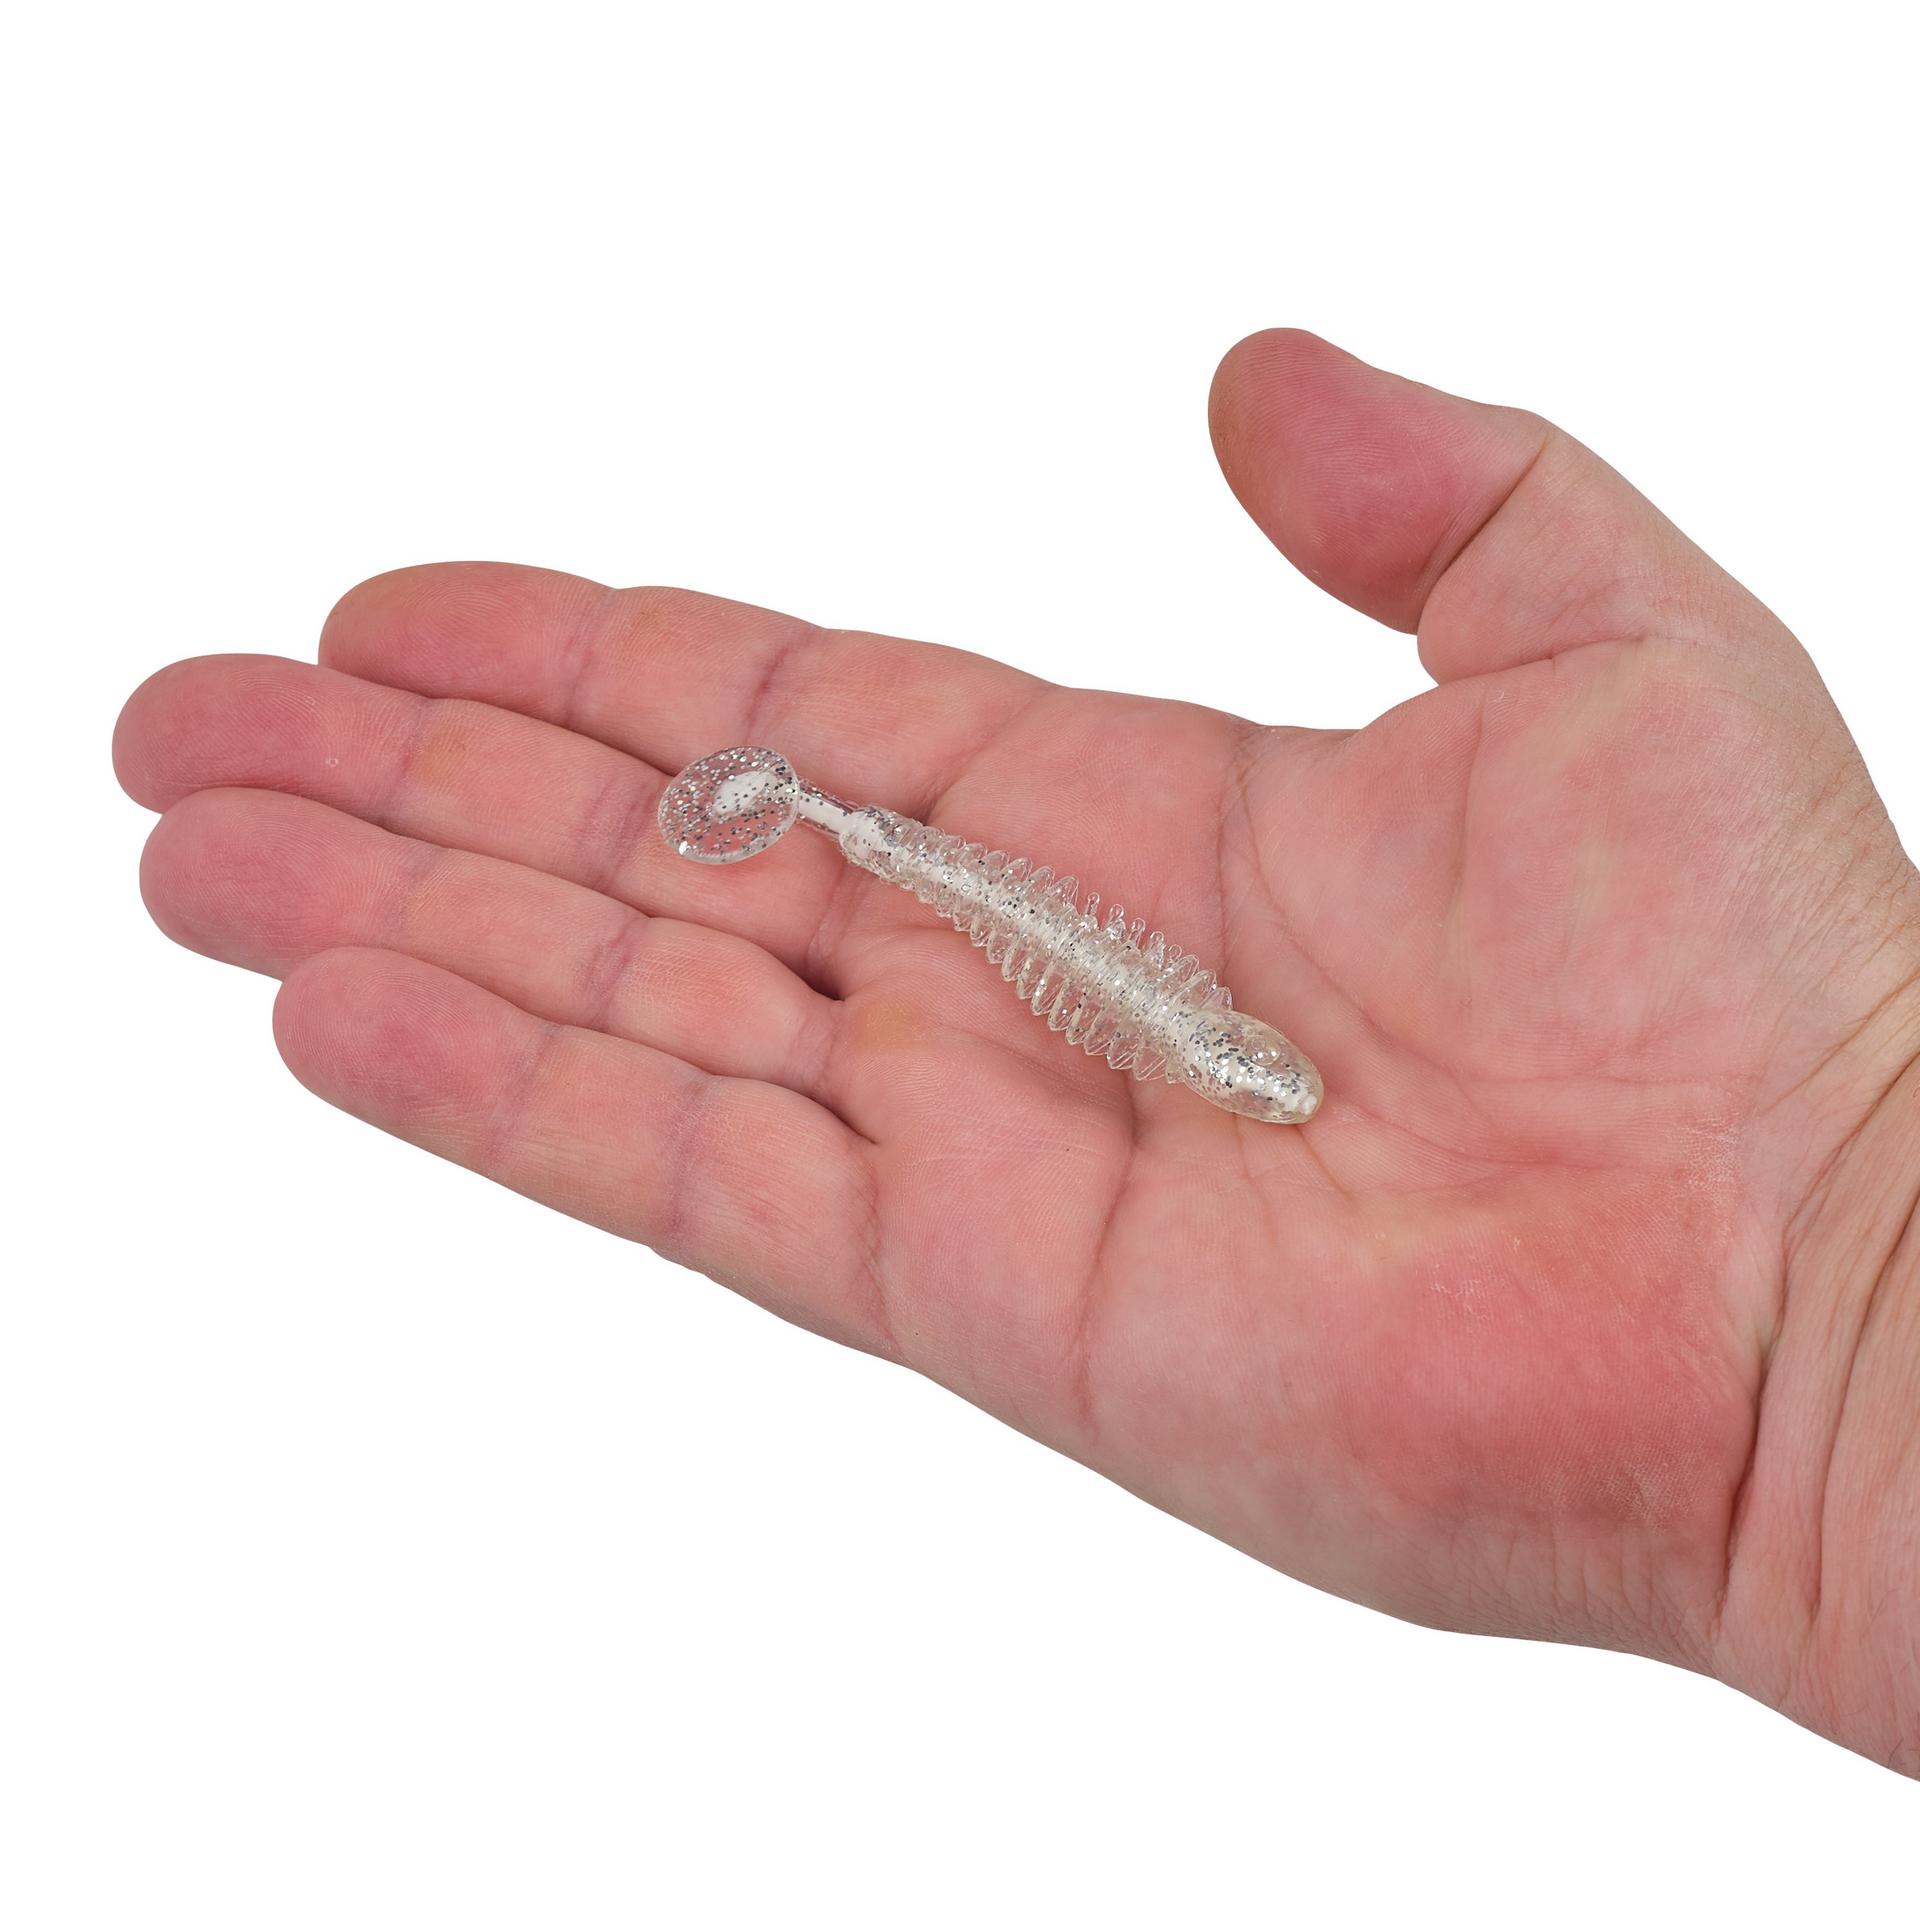 Berkley PowerBaitBonefish 2.5 WhiteIce HAND | Berkley Fishing